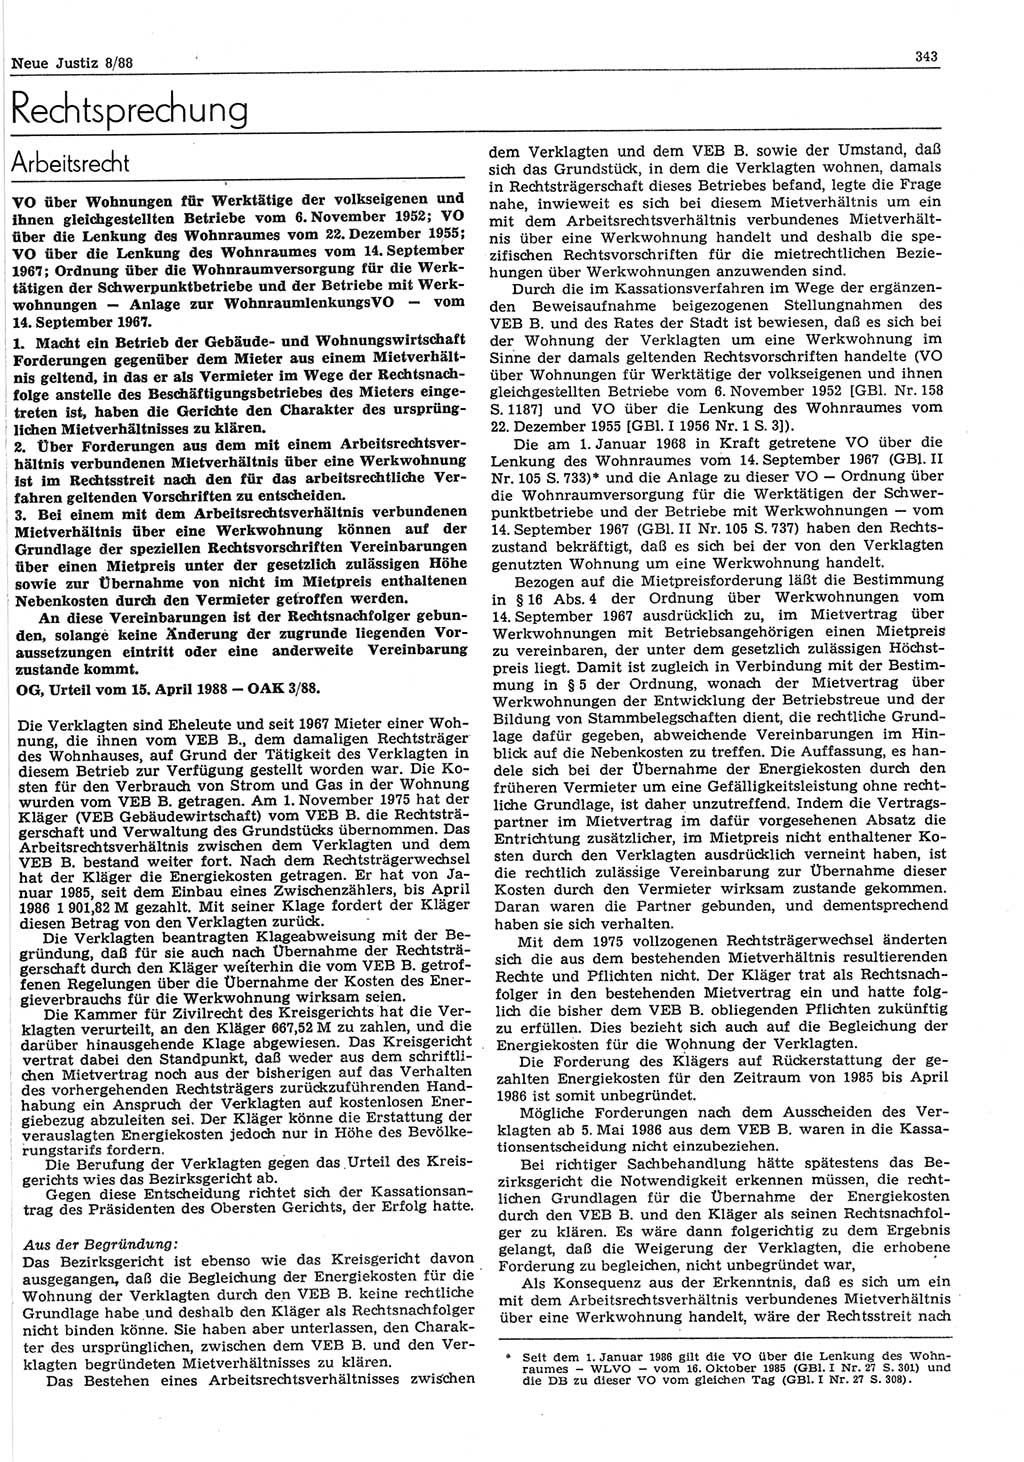 Neue Justiz (NJ), Zeitschrift für sozialistisches Recht und Gesetzlichkeit [Deutsche Demokratische Republik (DDR)], 42. Jahrgang 1988, Seite 343 (NJ DDR 1988, S. 343)